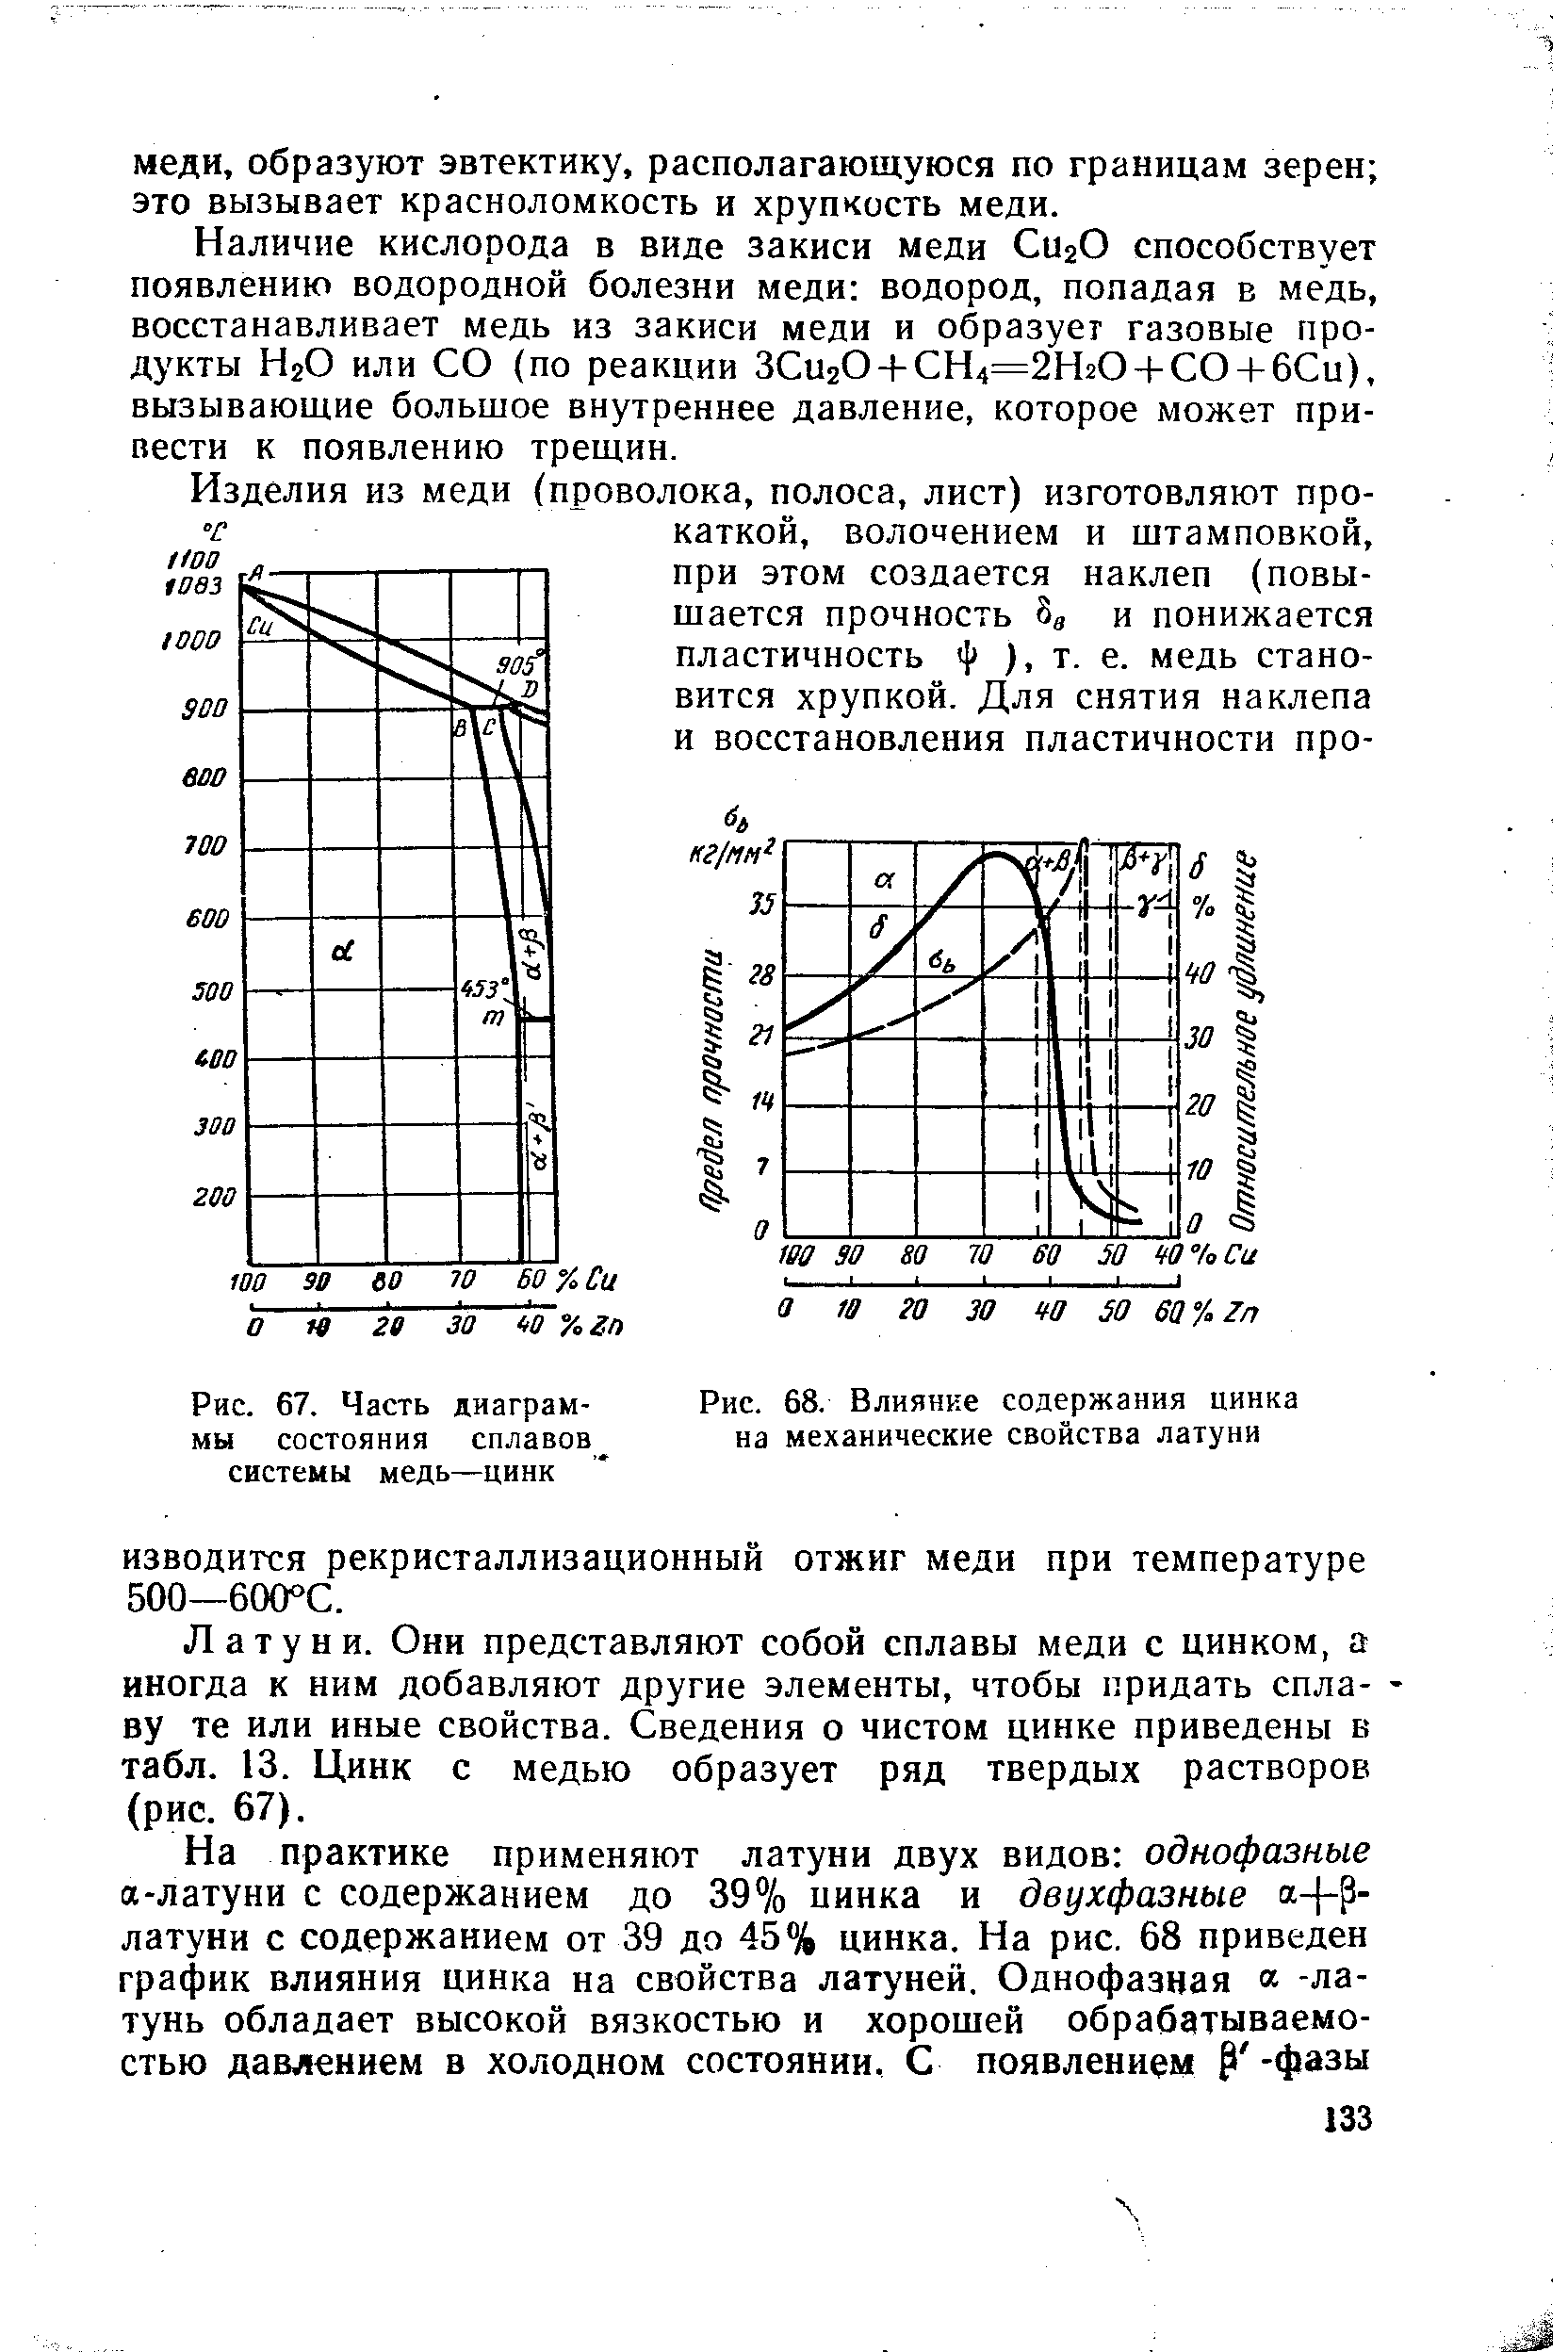 Рис. 67. Часть диаграммы состояния сплавов системы медь—цинк
